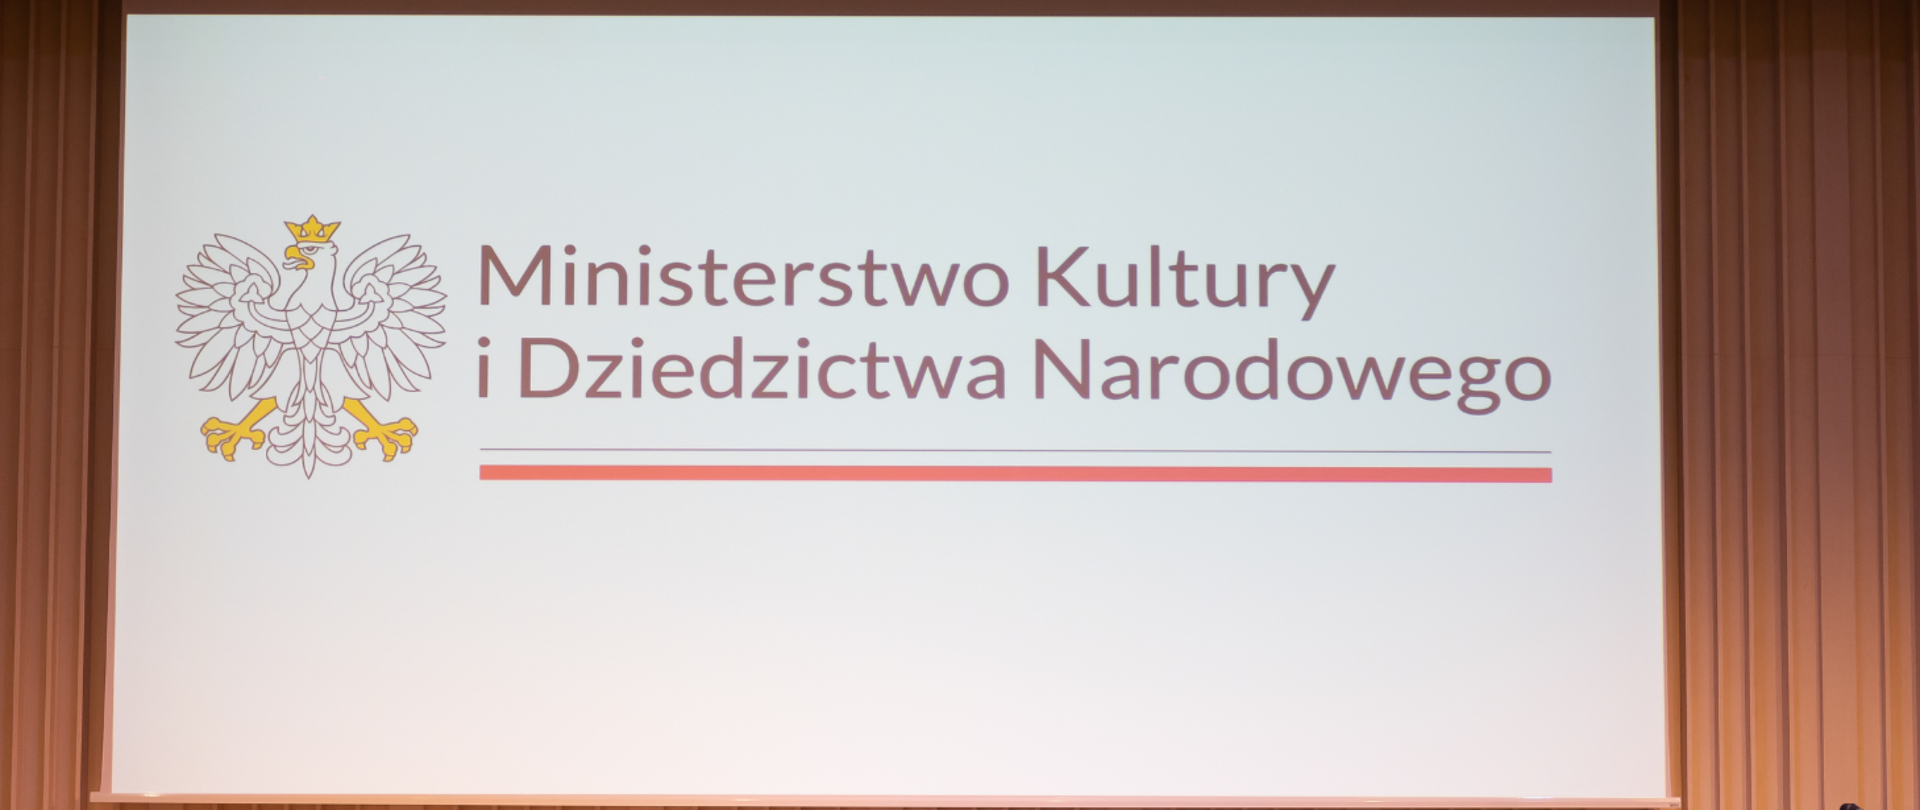 Na białym tle po lewej stronie biały orzeł w żółtej koronie. Po prawej stronie czarny napis Ministerstwo Kultury i Dziedzictwa Narodowego, a pod nim biało- czerwony pasek symbolizujący flagę Polski.